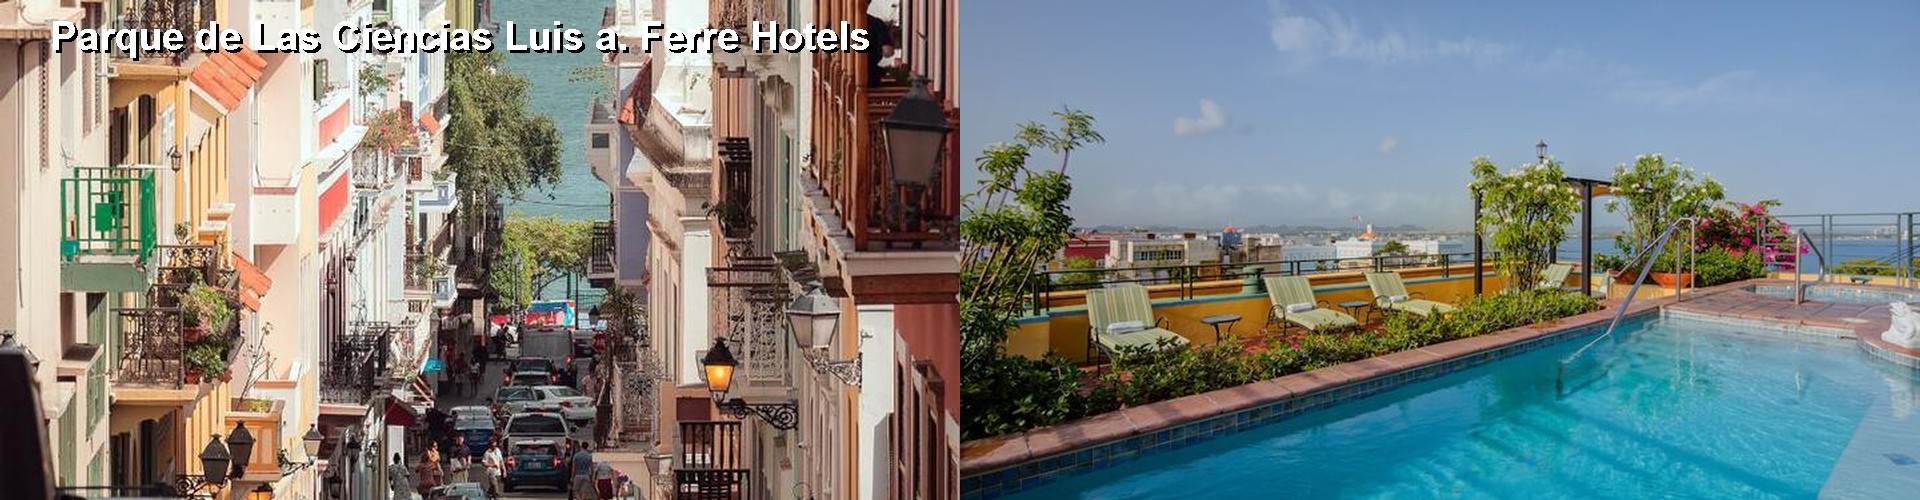 5 Best Hotels near Parque de Las Ciencias Luis a. Ferre